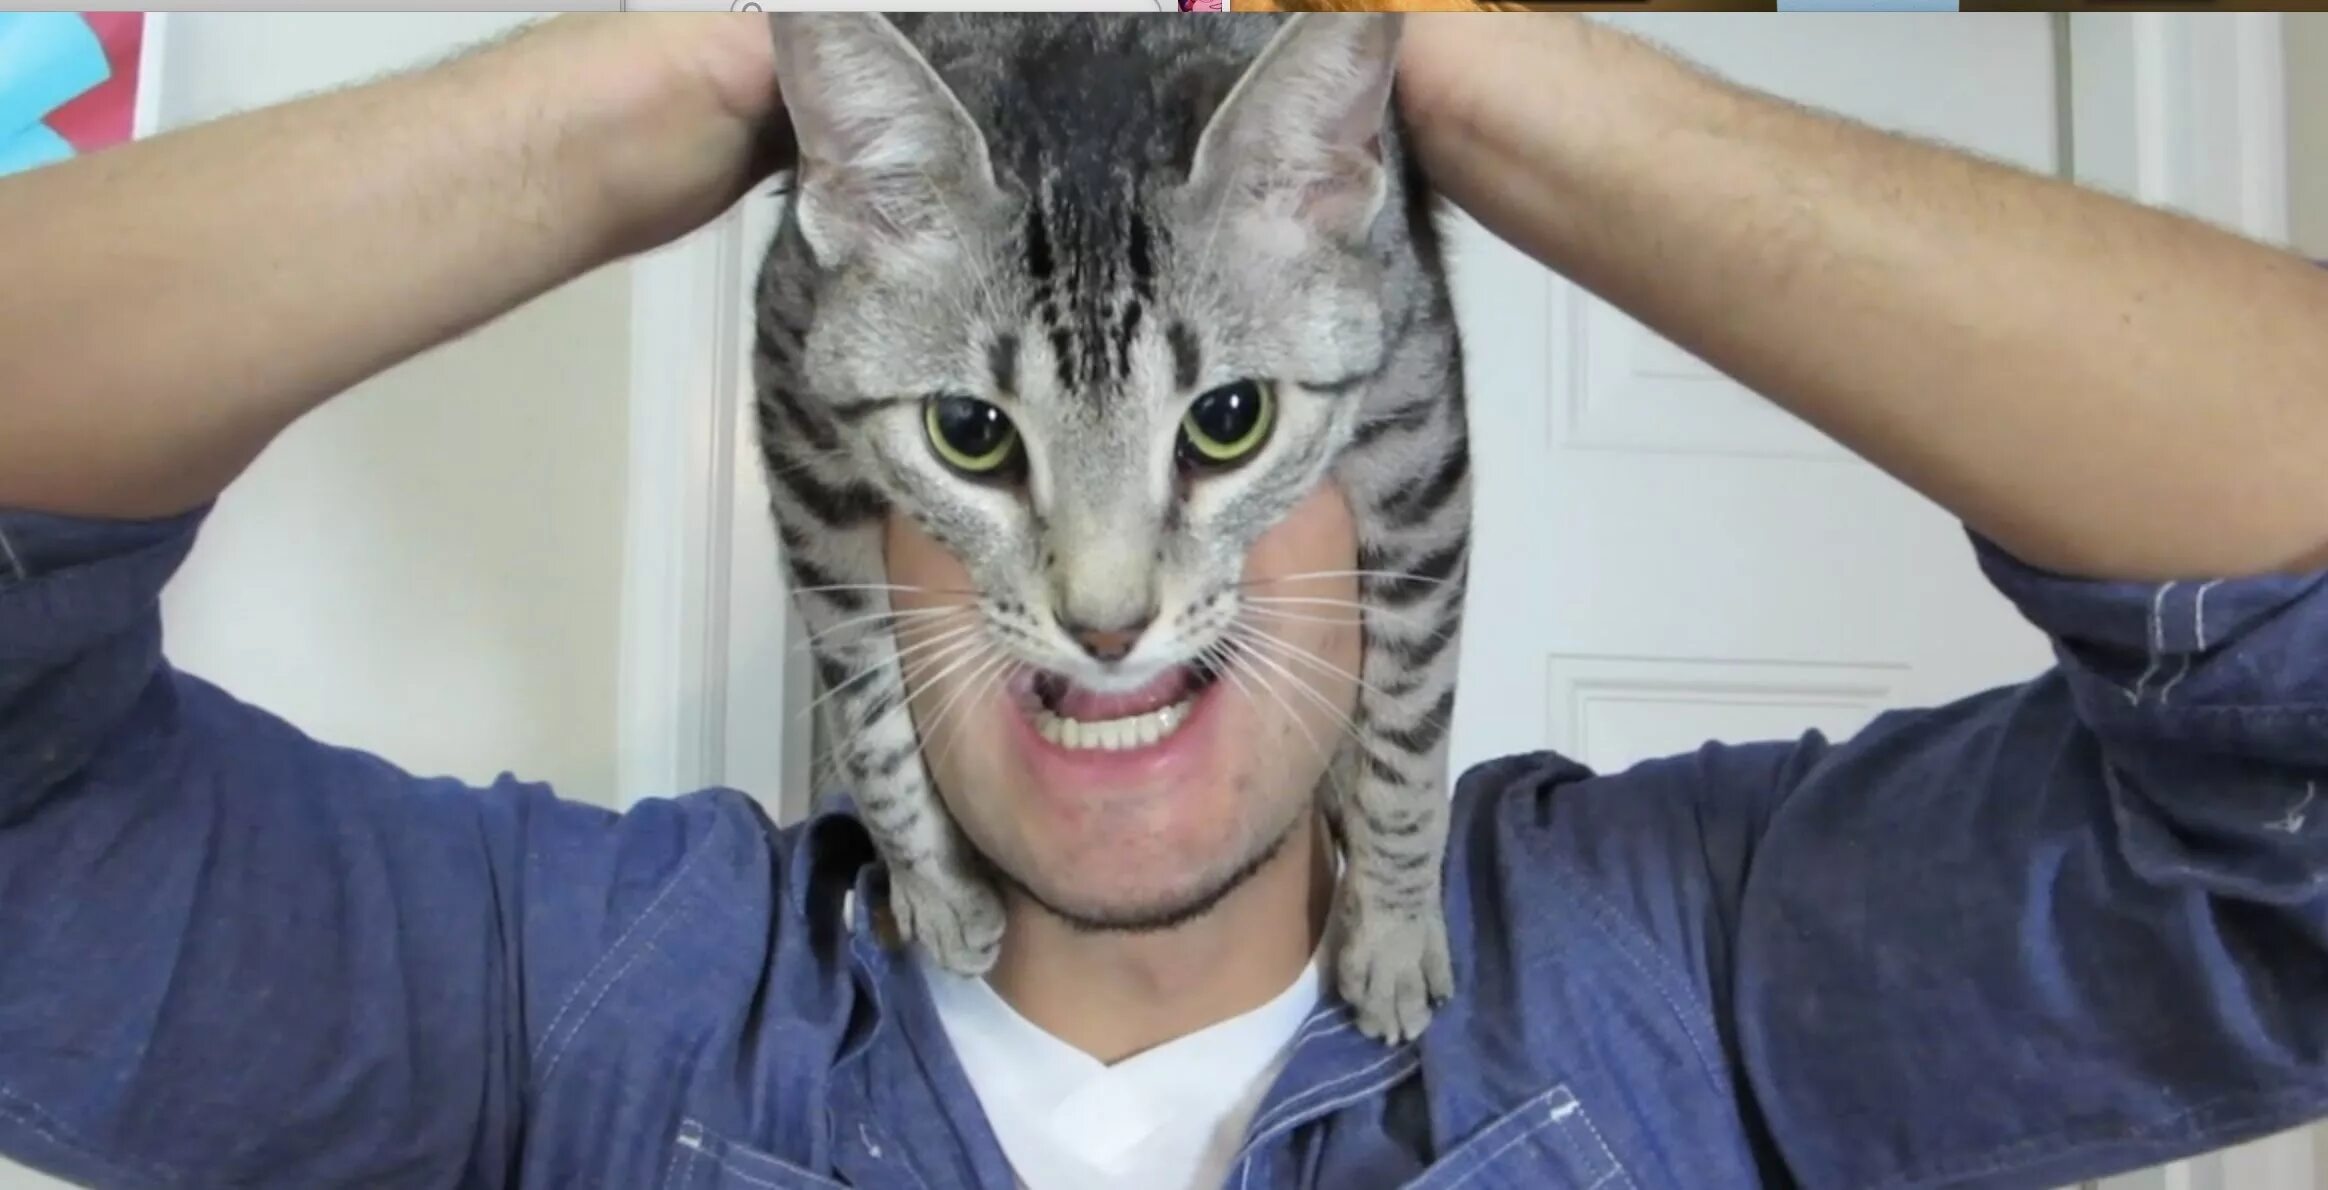 Голова кота. Котик на голове мужчины. Кот дремот в реальной жизни